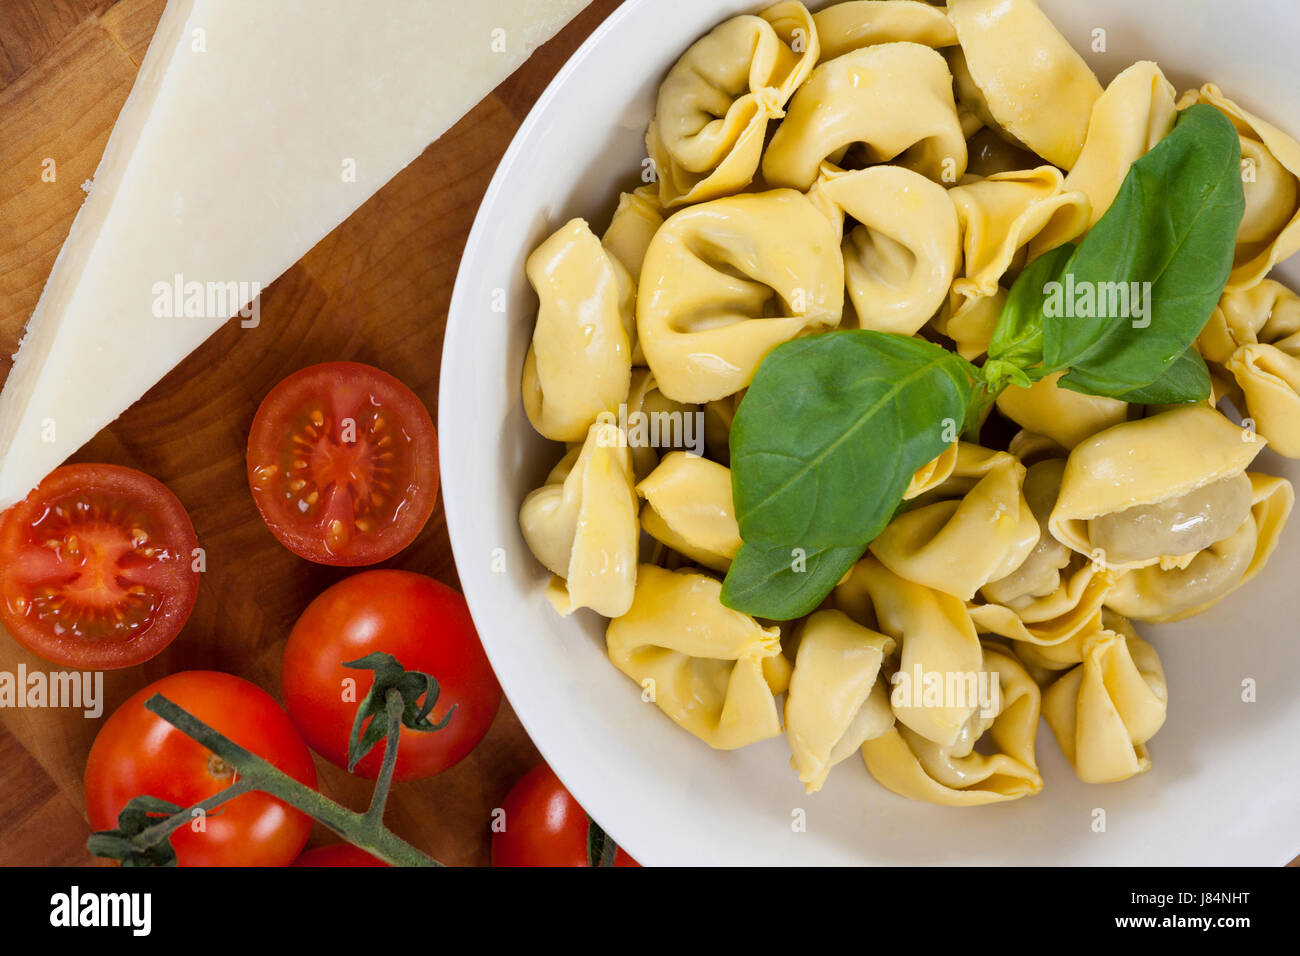 Nahaufnahme von Nudeln mit Kräutern, Käse, Tomaten und Serviette Tuch Stockfoto